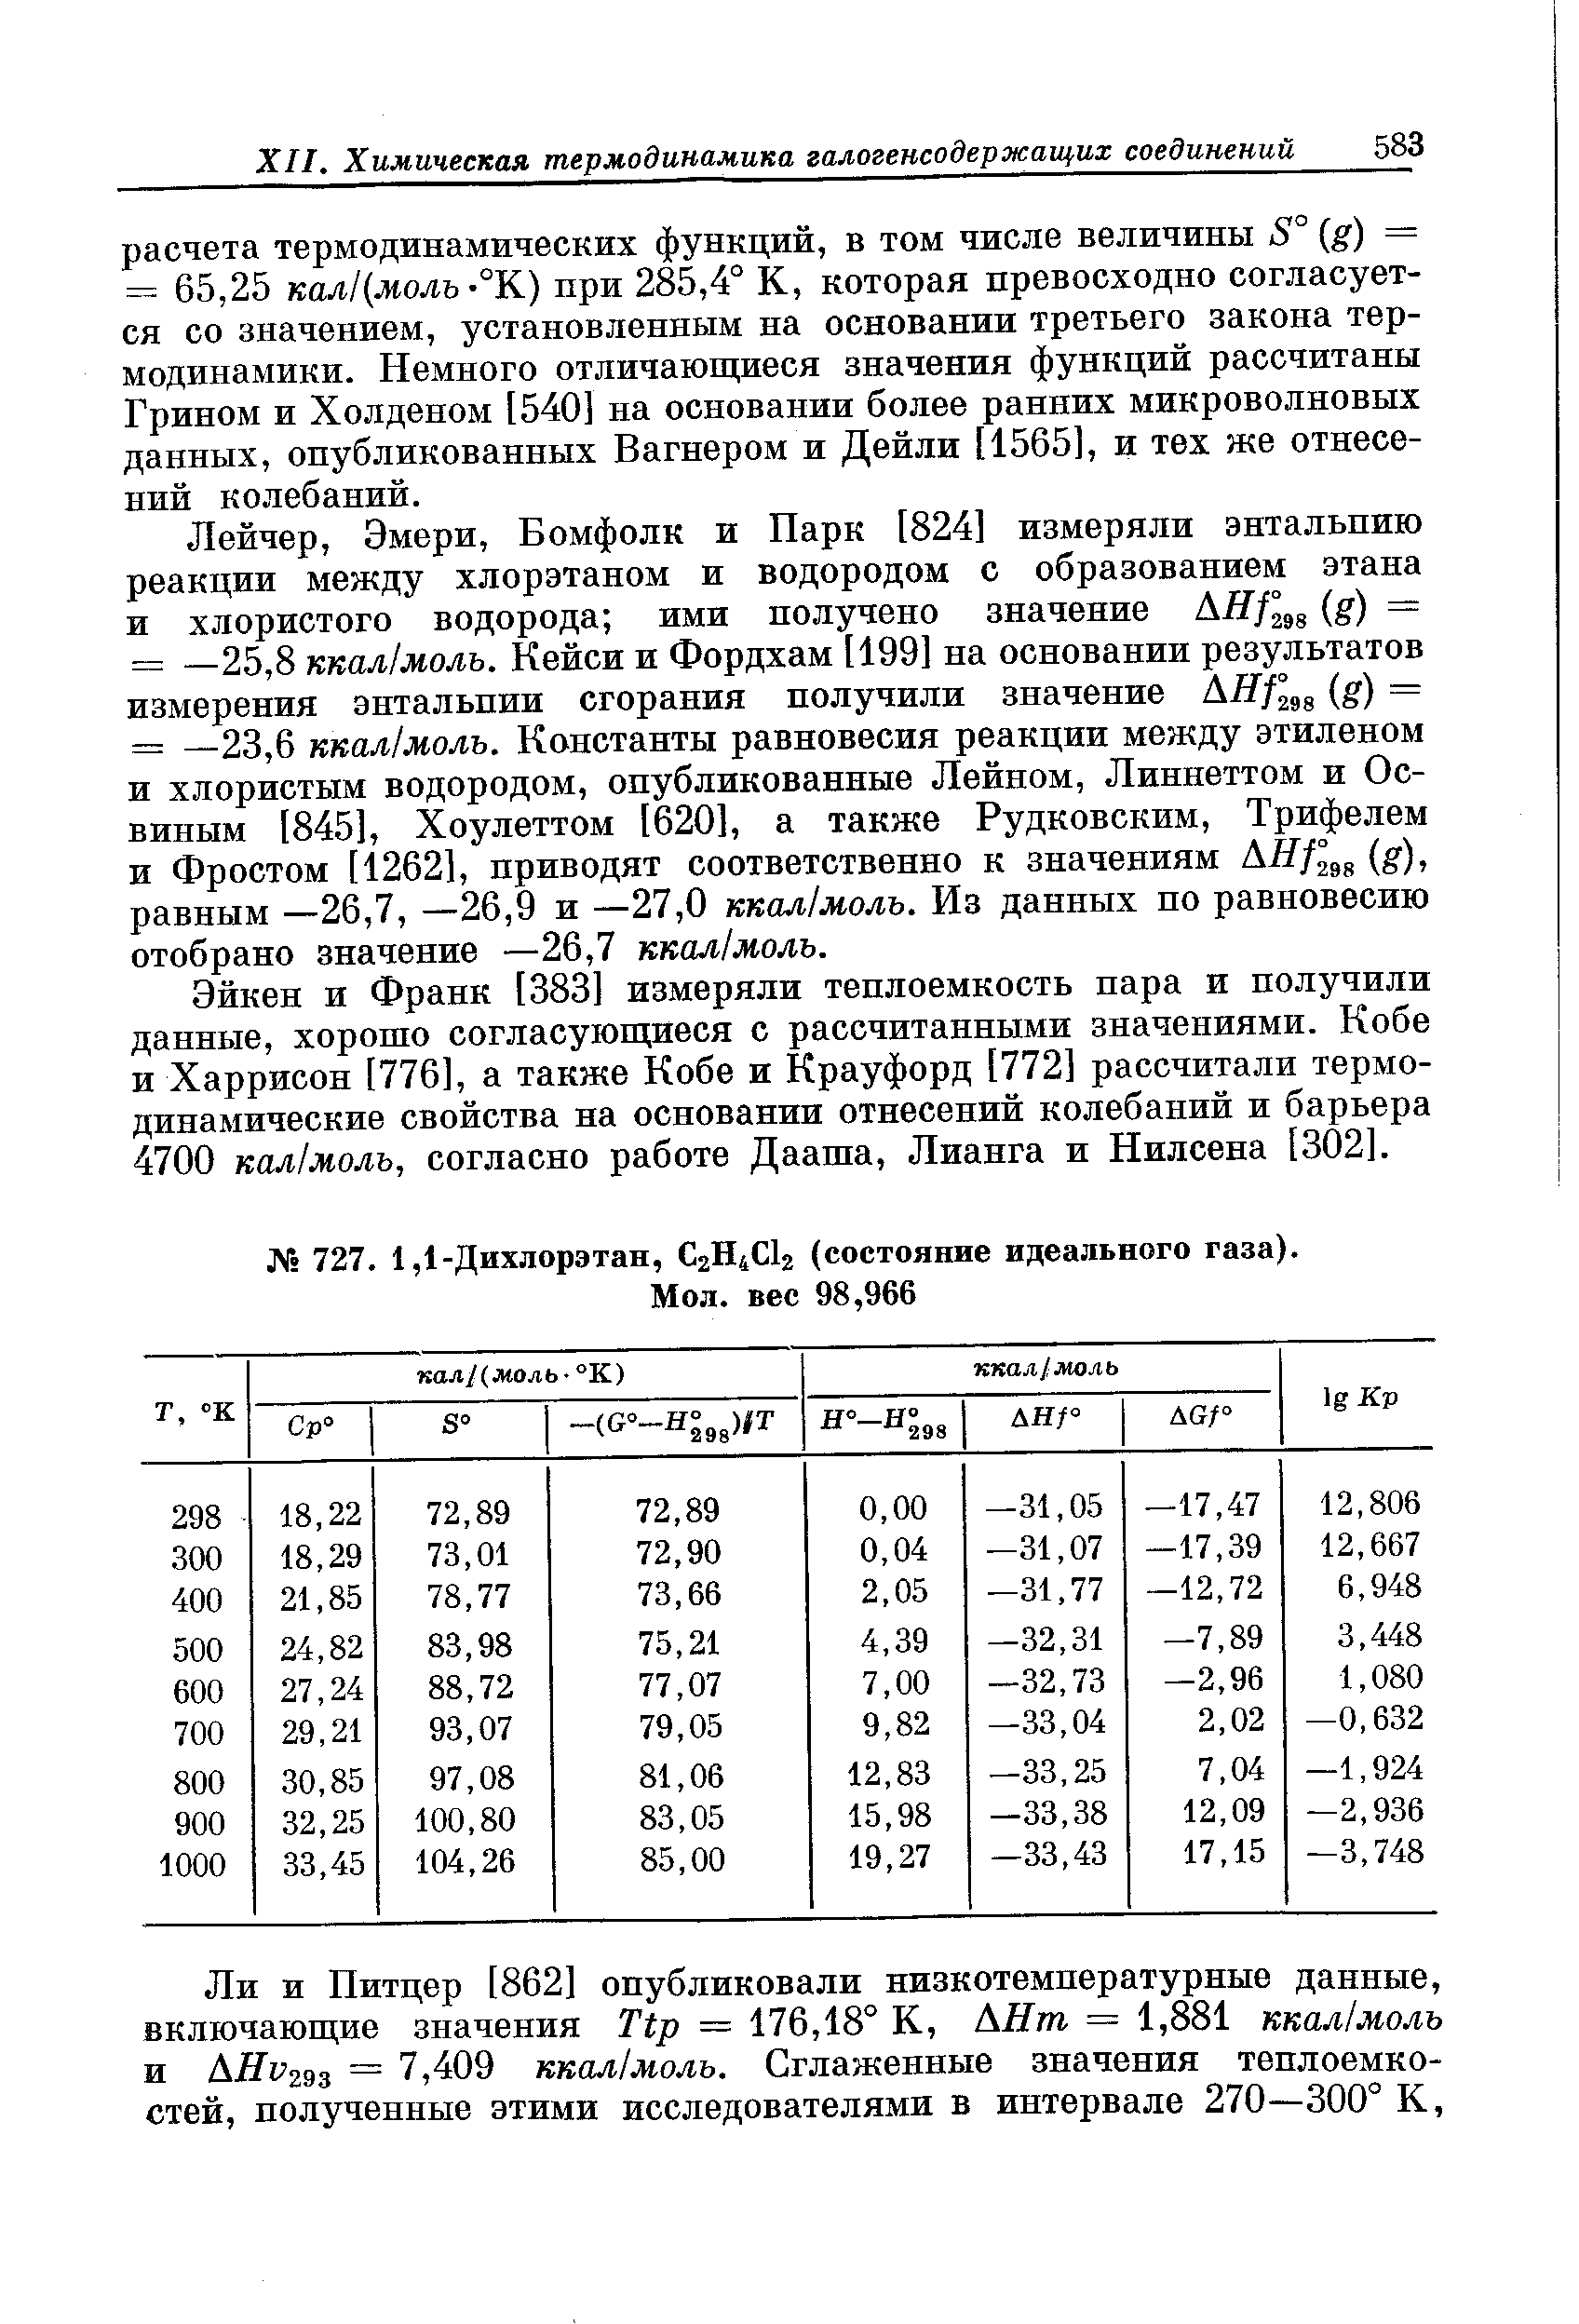 Грином и Холденом [540] на основании более ранних микроволновых данных, опубликованных Вагнером и Дейли ний колебаний.